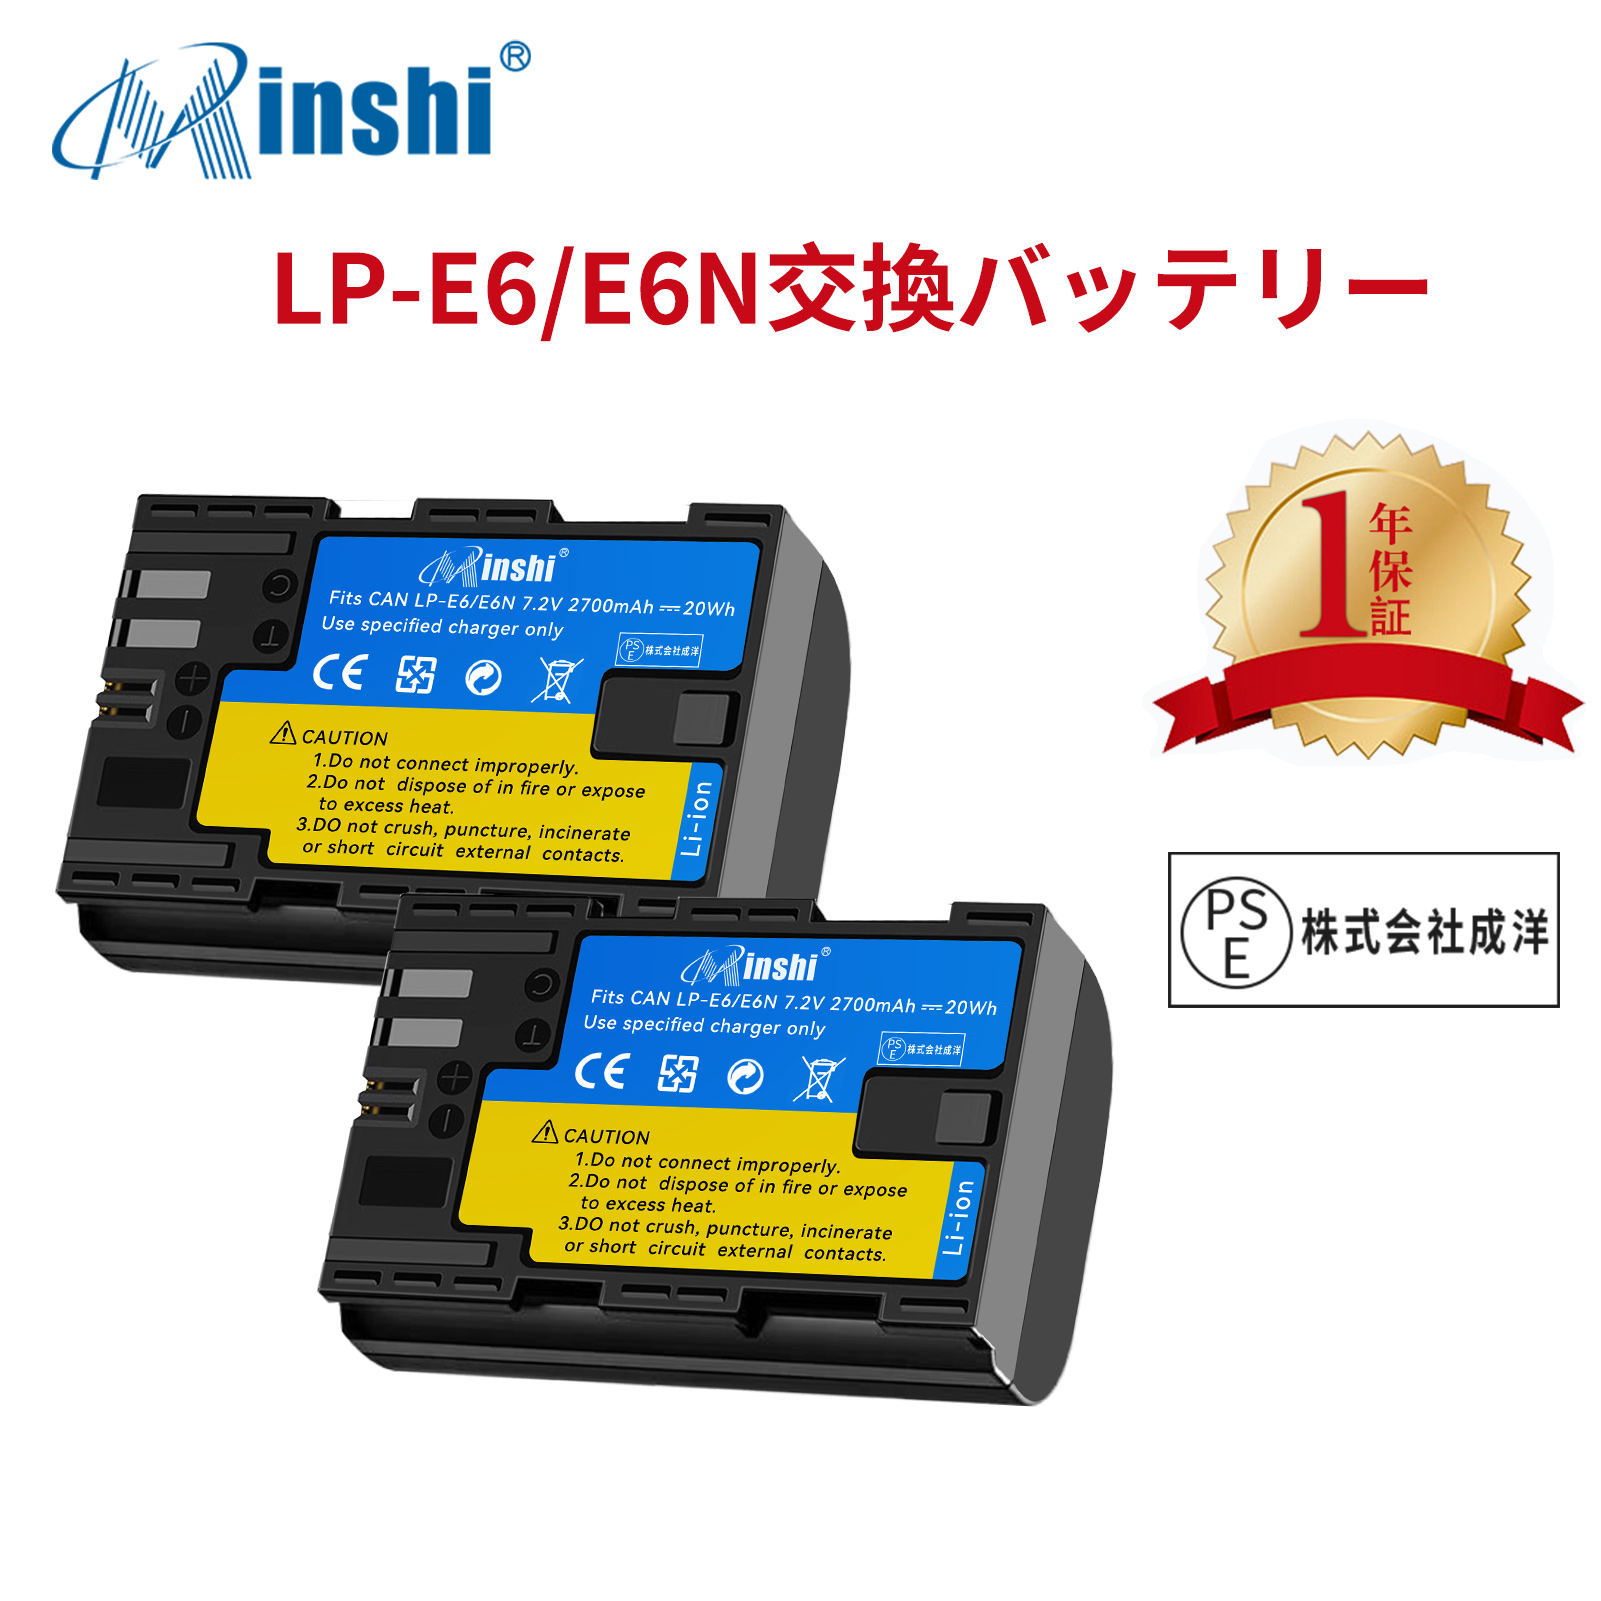 【２個セット】minshi Canon 対応 LP-E6NH LP-E6N LP-E6 互換バッテリー キヤノン対応 EOS高品質LP-E6NH交換用バッテリー